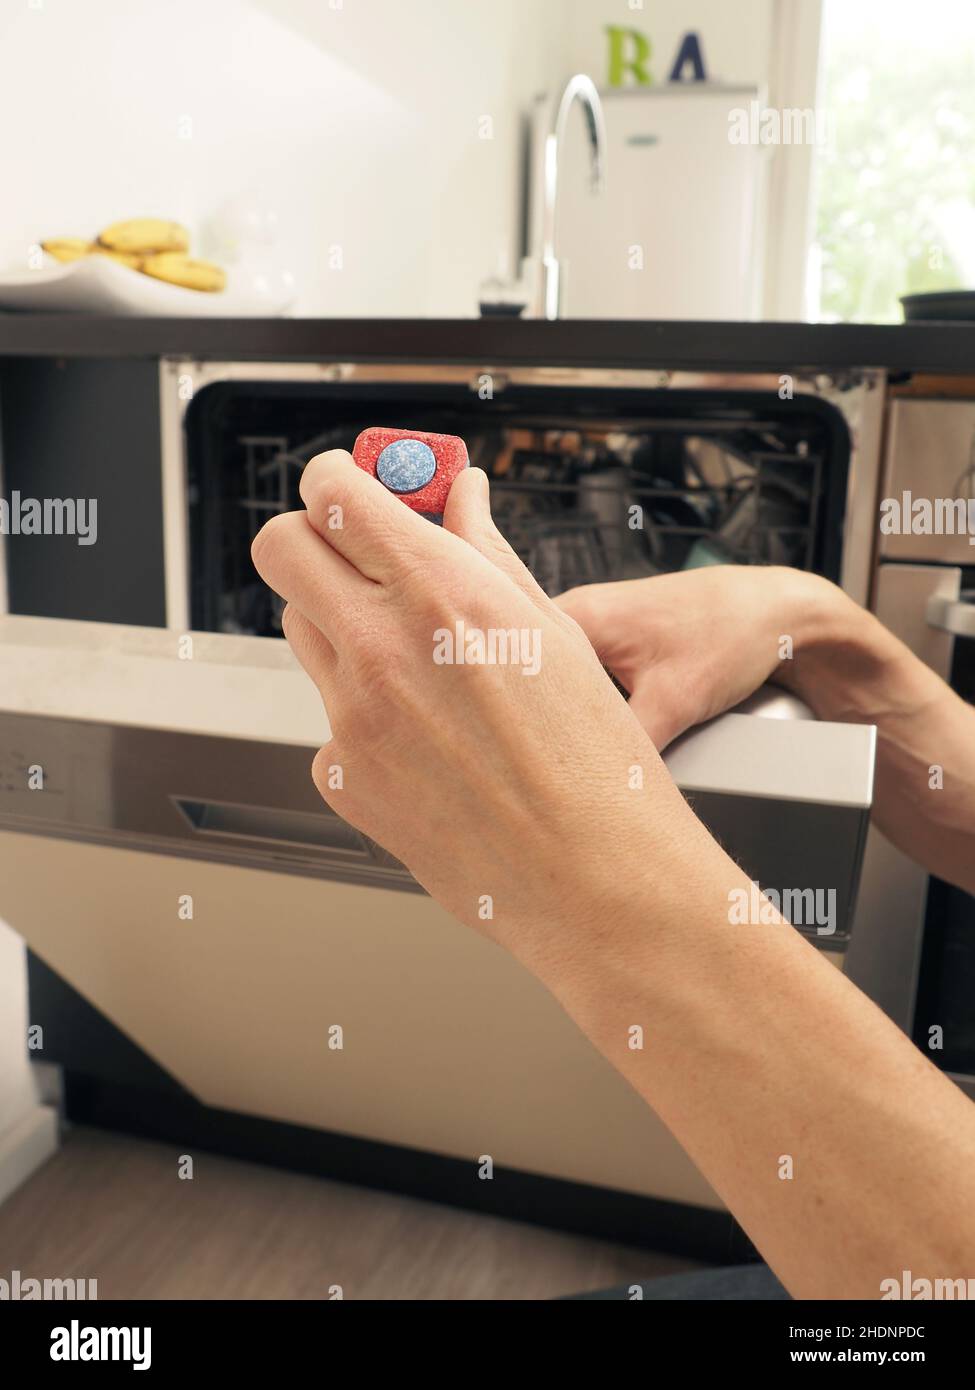 dishwasher, dishwashing cleaner, dishwashers, dishwashing cleaners Stock Photo